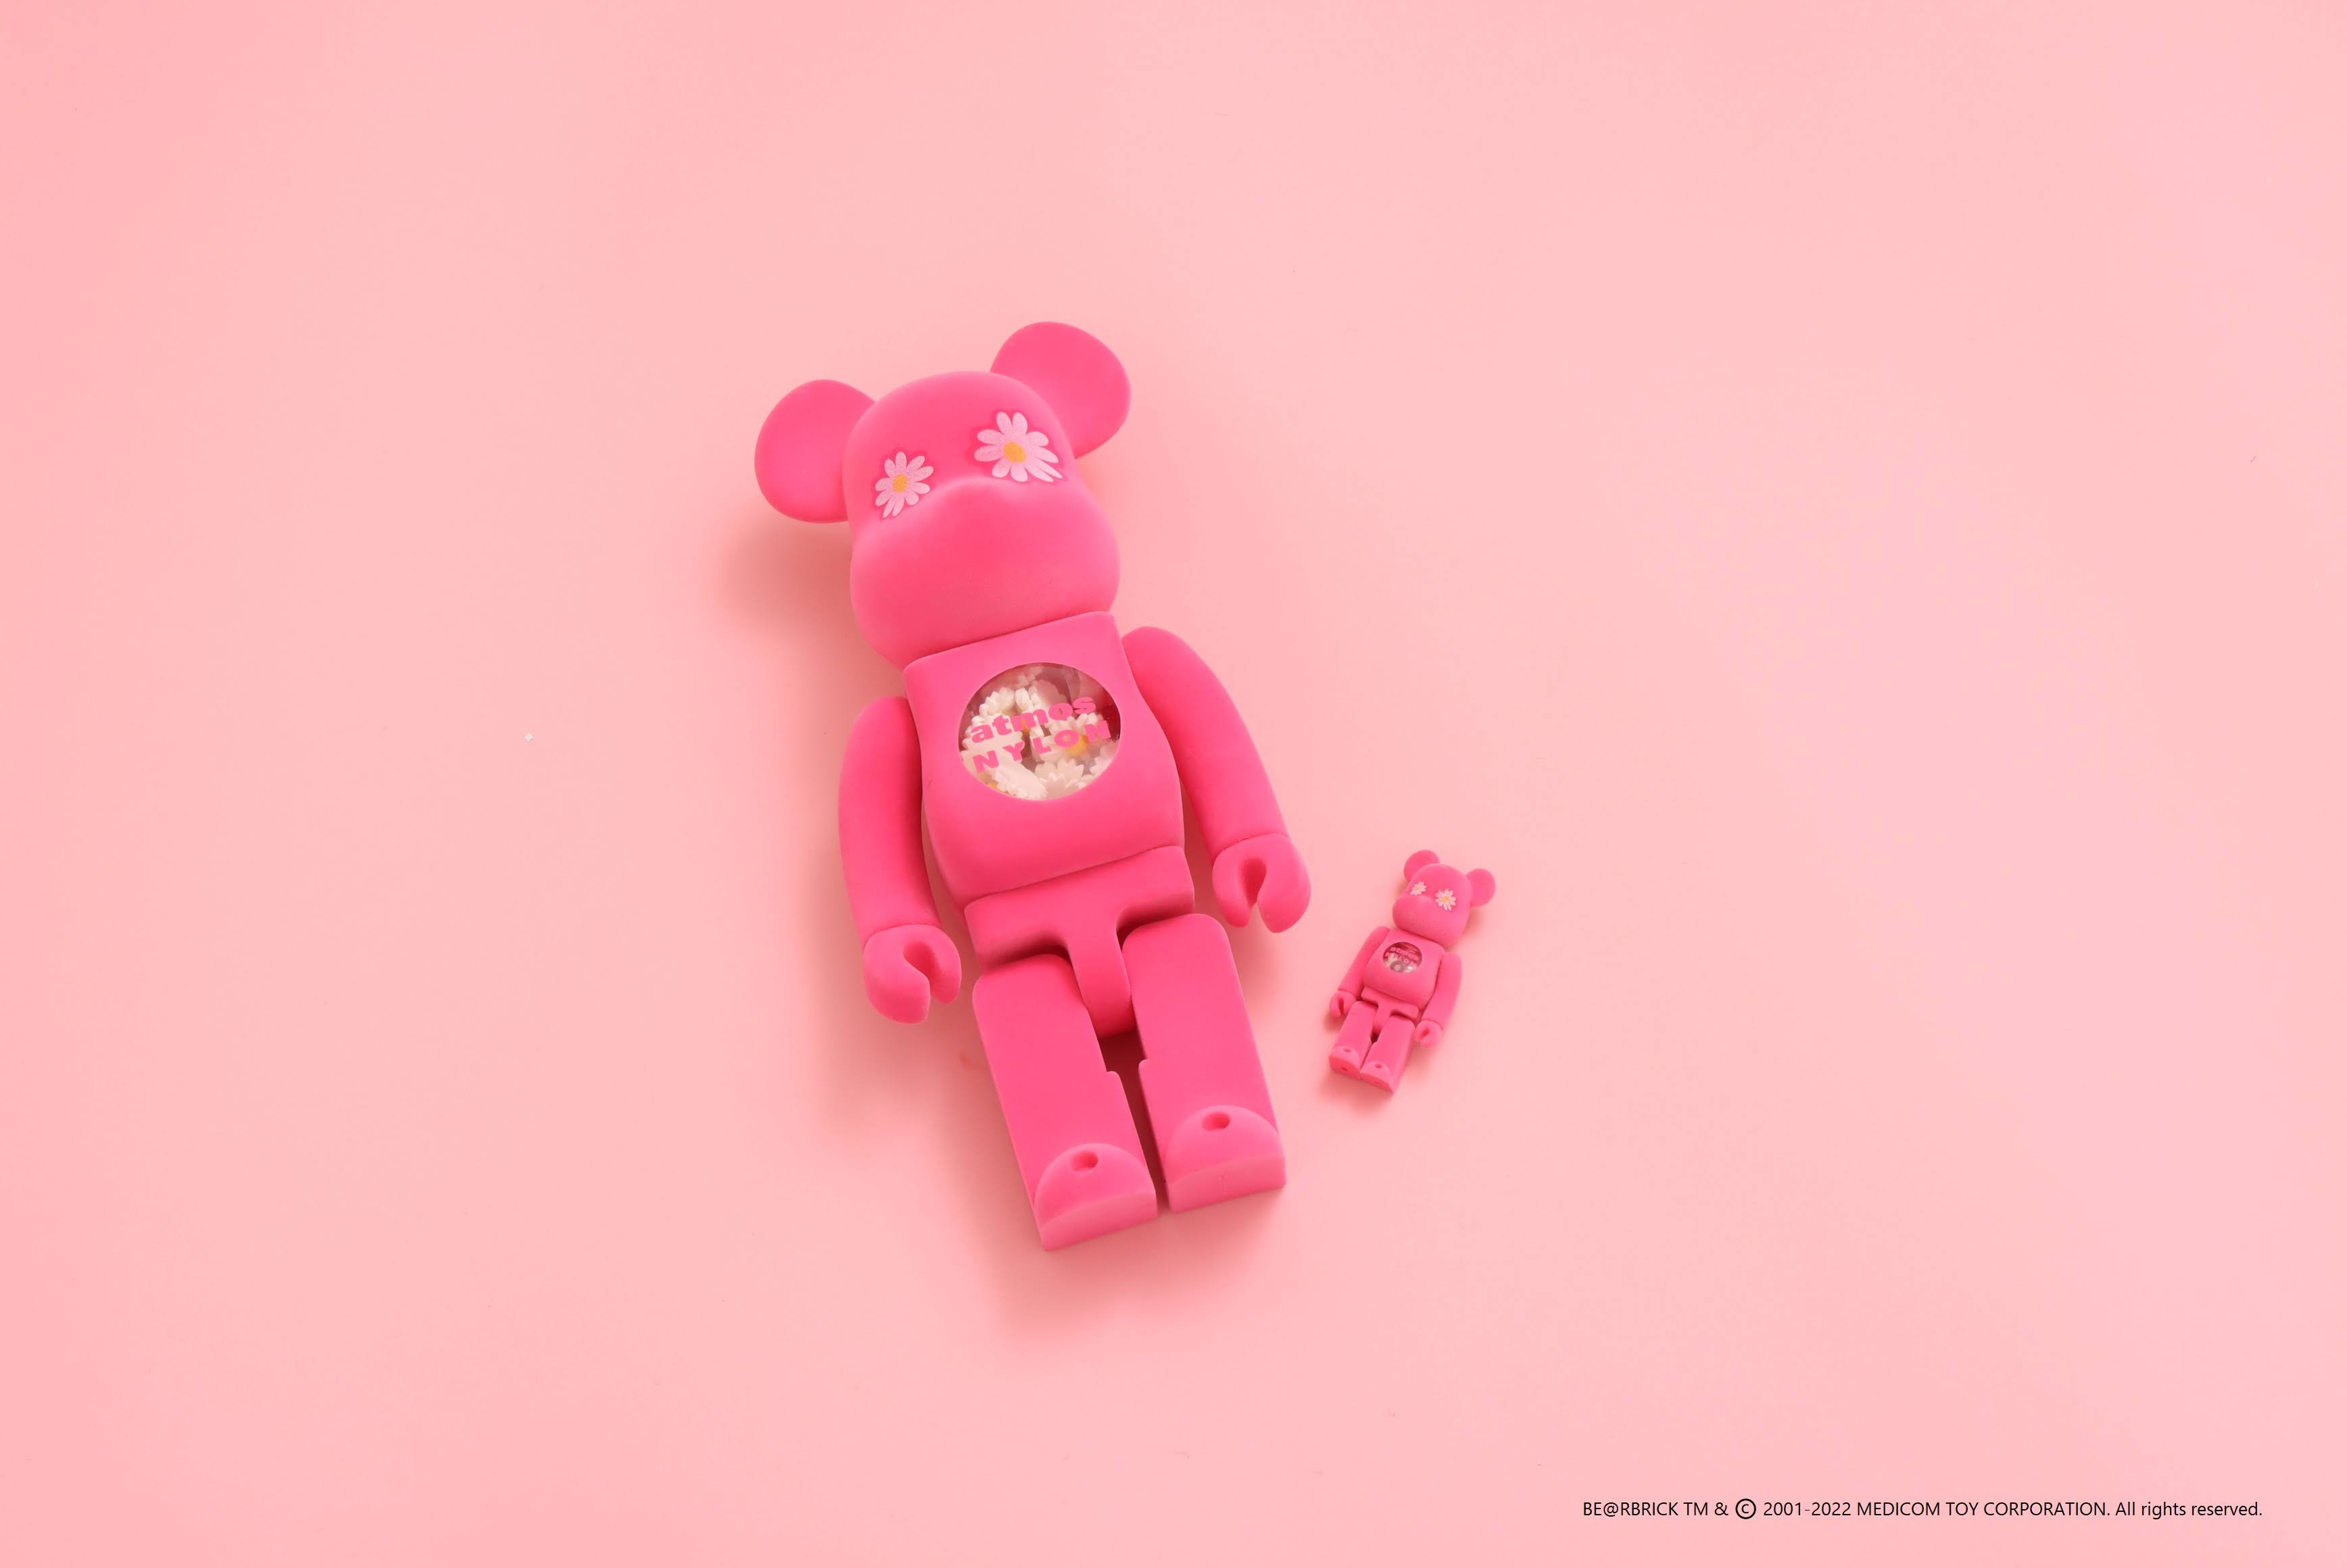 atmos pinkより雑誌NYLONとコラボレーションしたピンクのBE@RBRICK が1